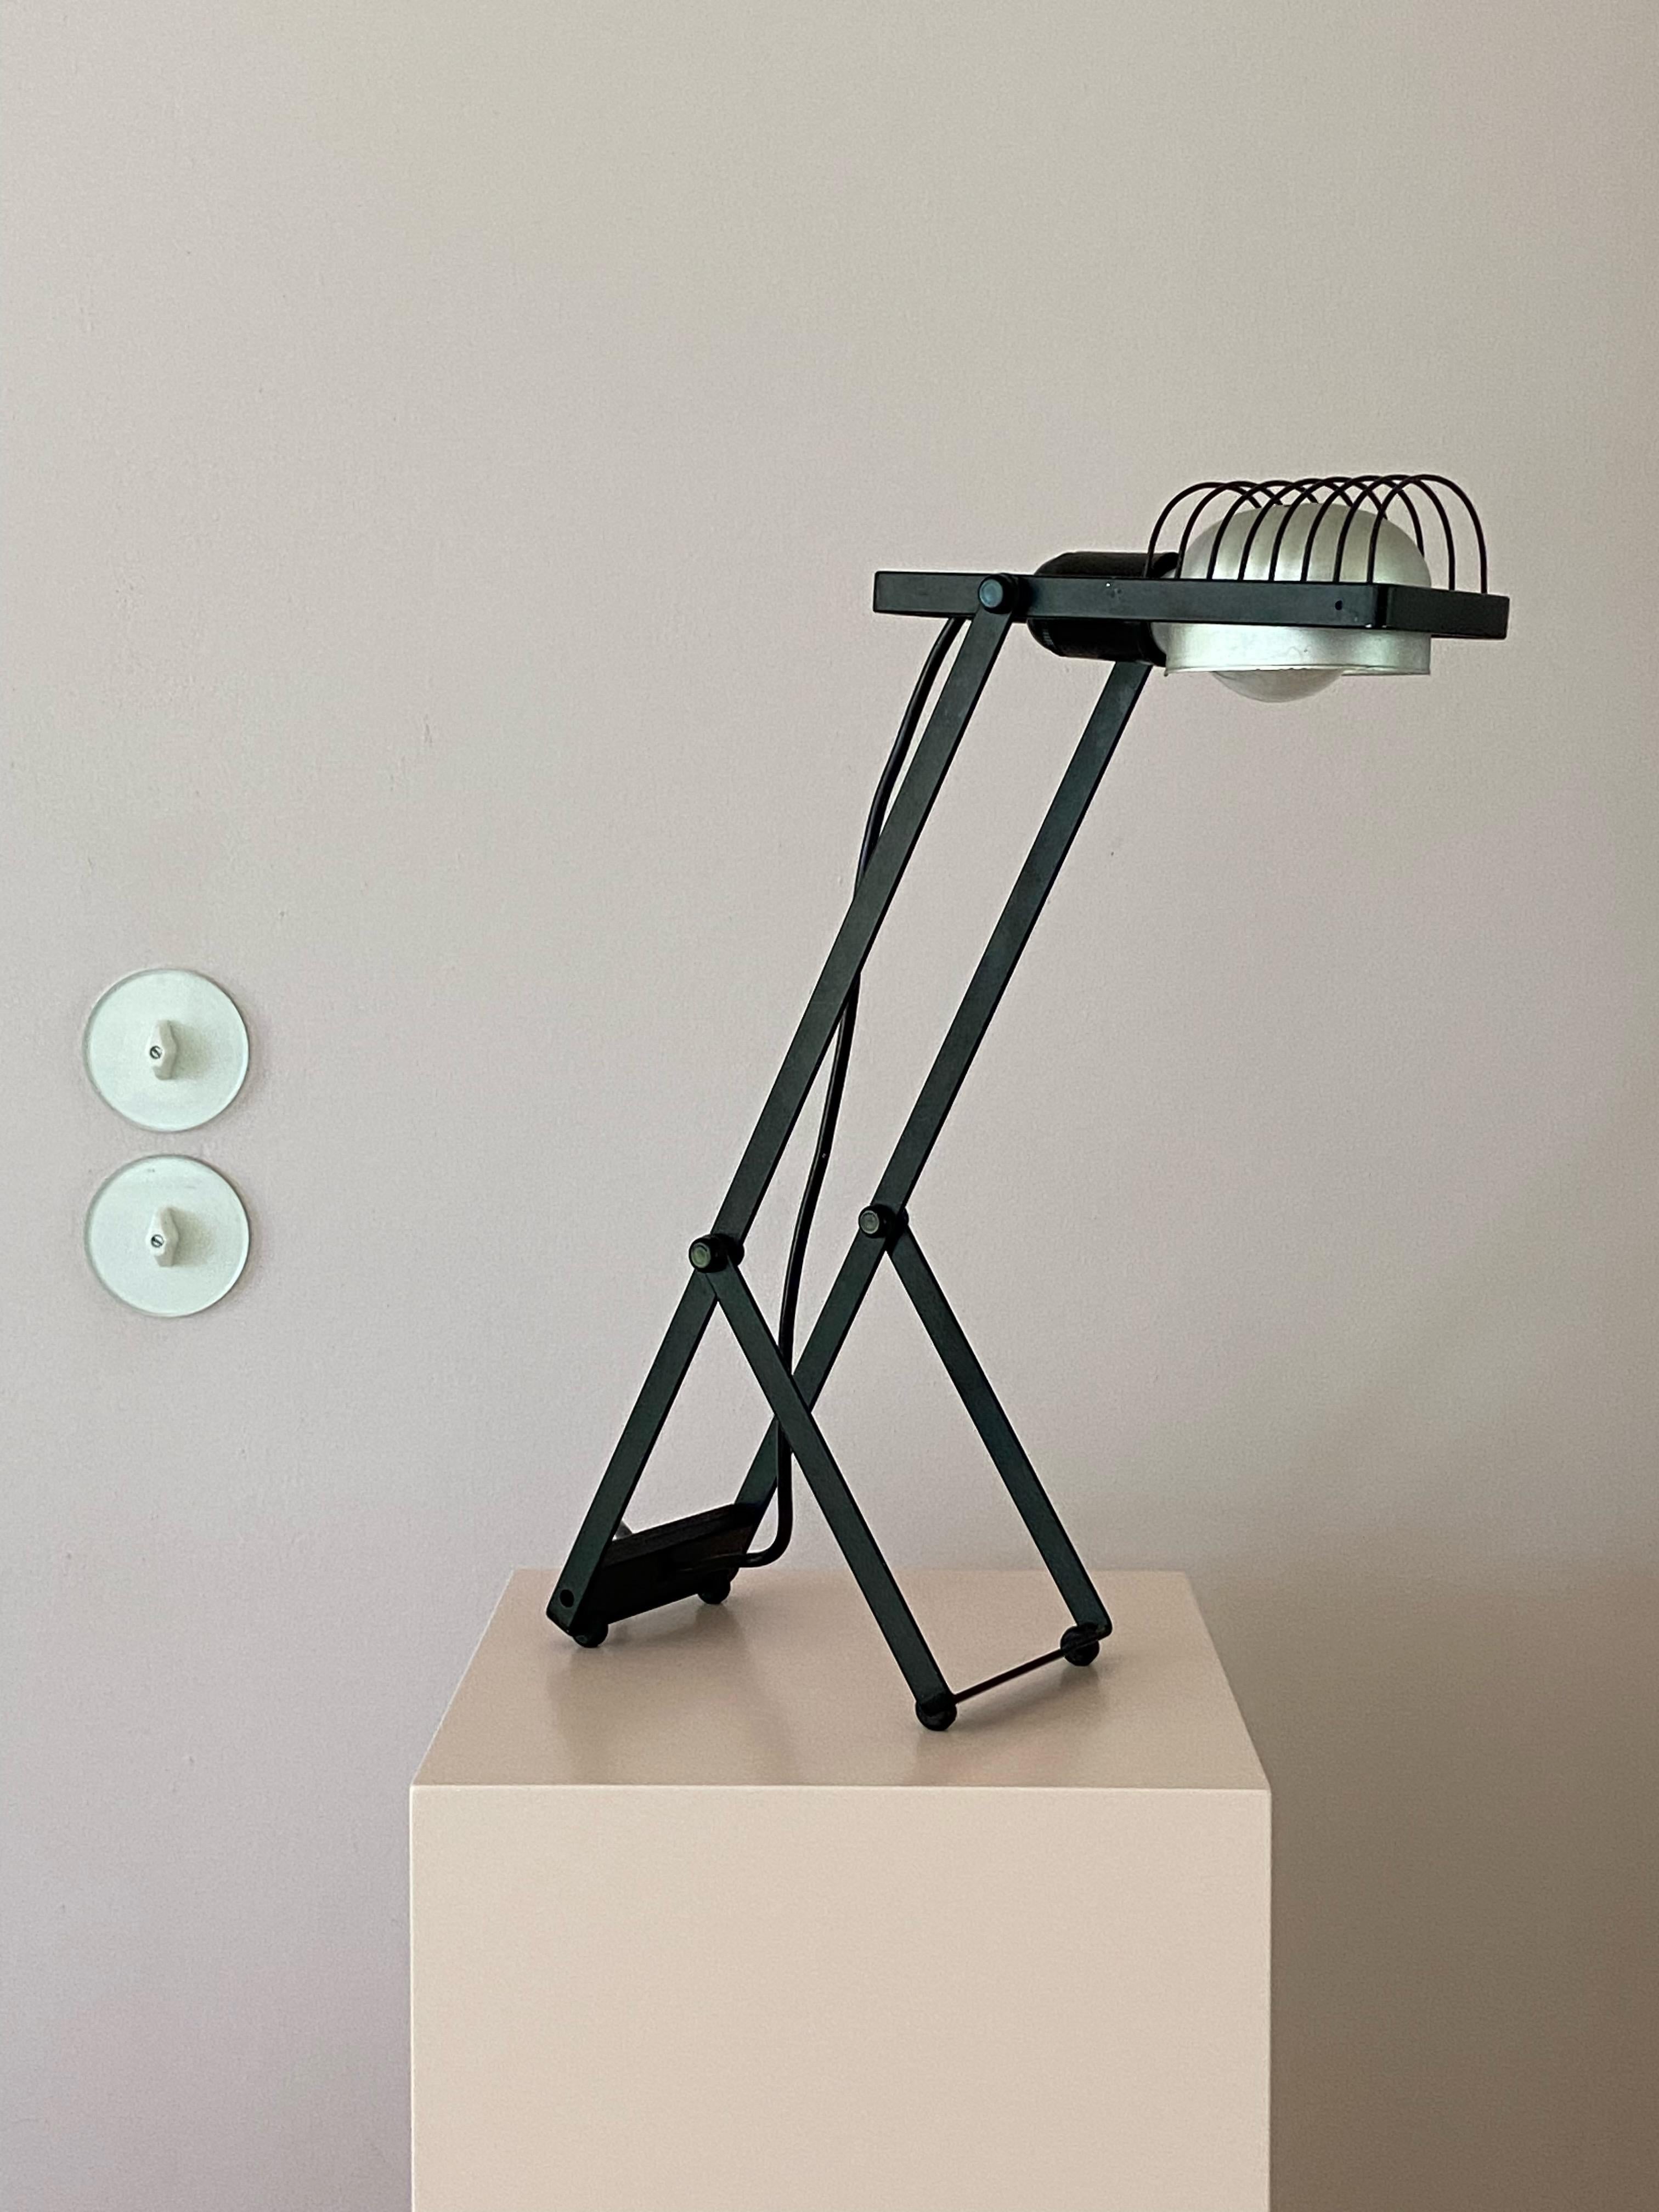 Painted Sintesi Table Lamp Design by Ernesto Gismondi for Artemide 1970s For Sale